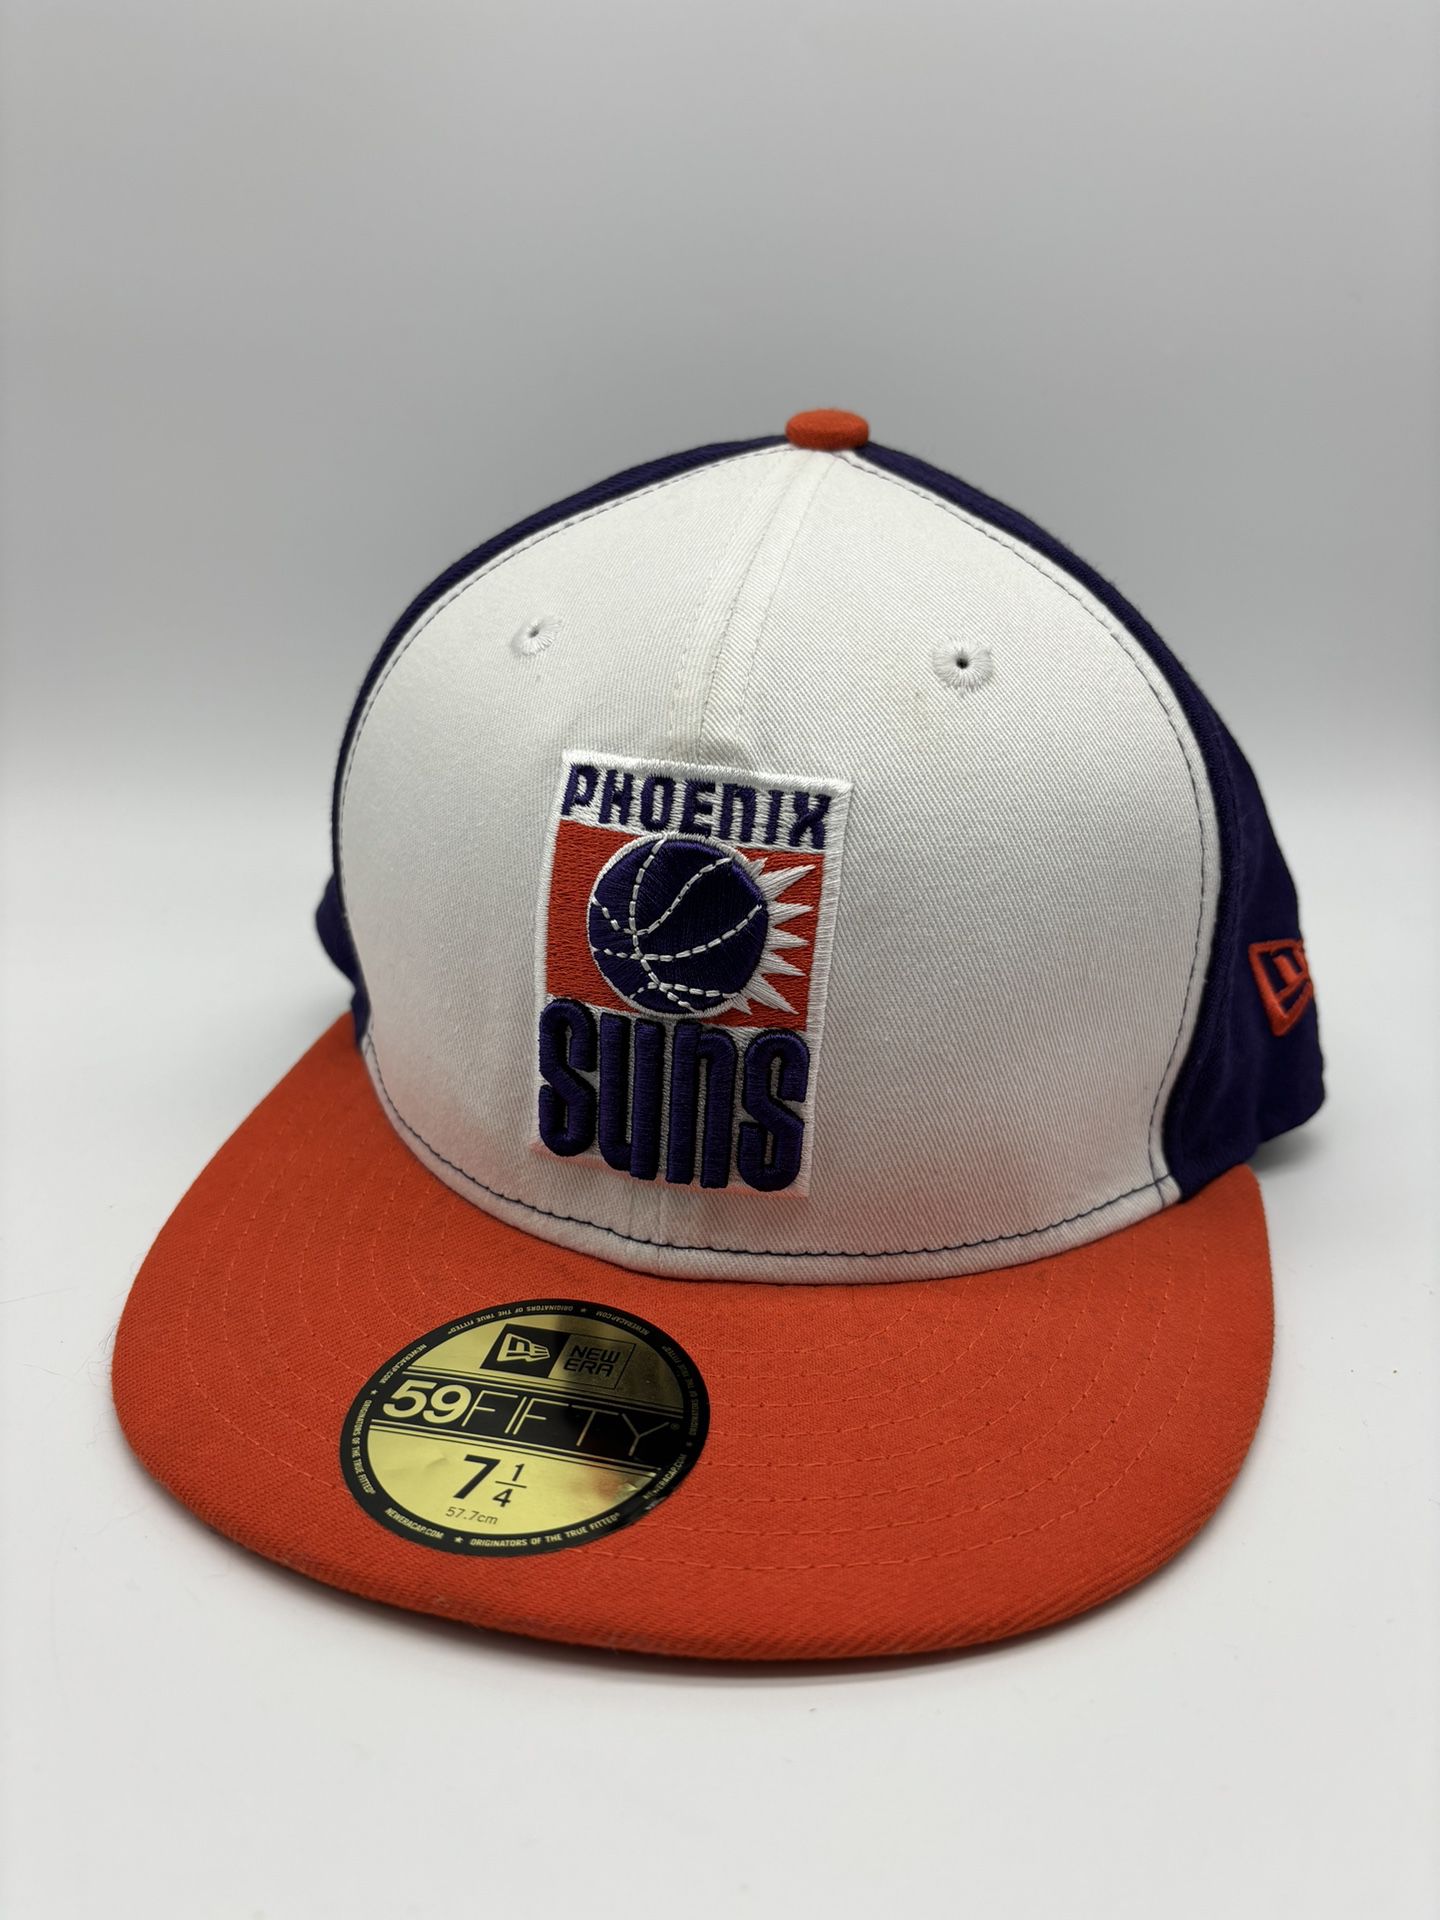 New Era 59FIFTY Phoenix Suns Fitted Hat Cap Orange  7 1/4 NBA Hardwood Classics